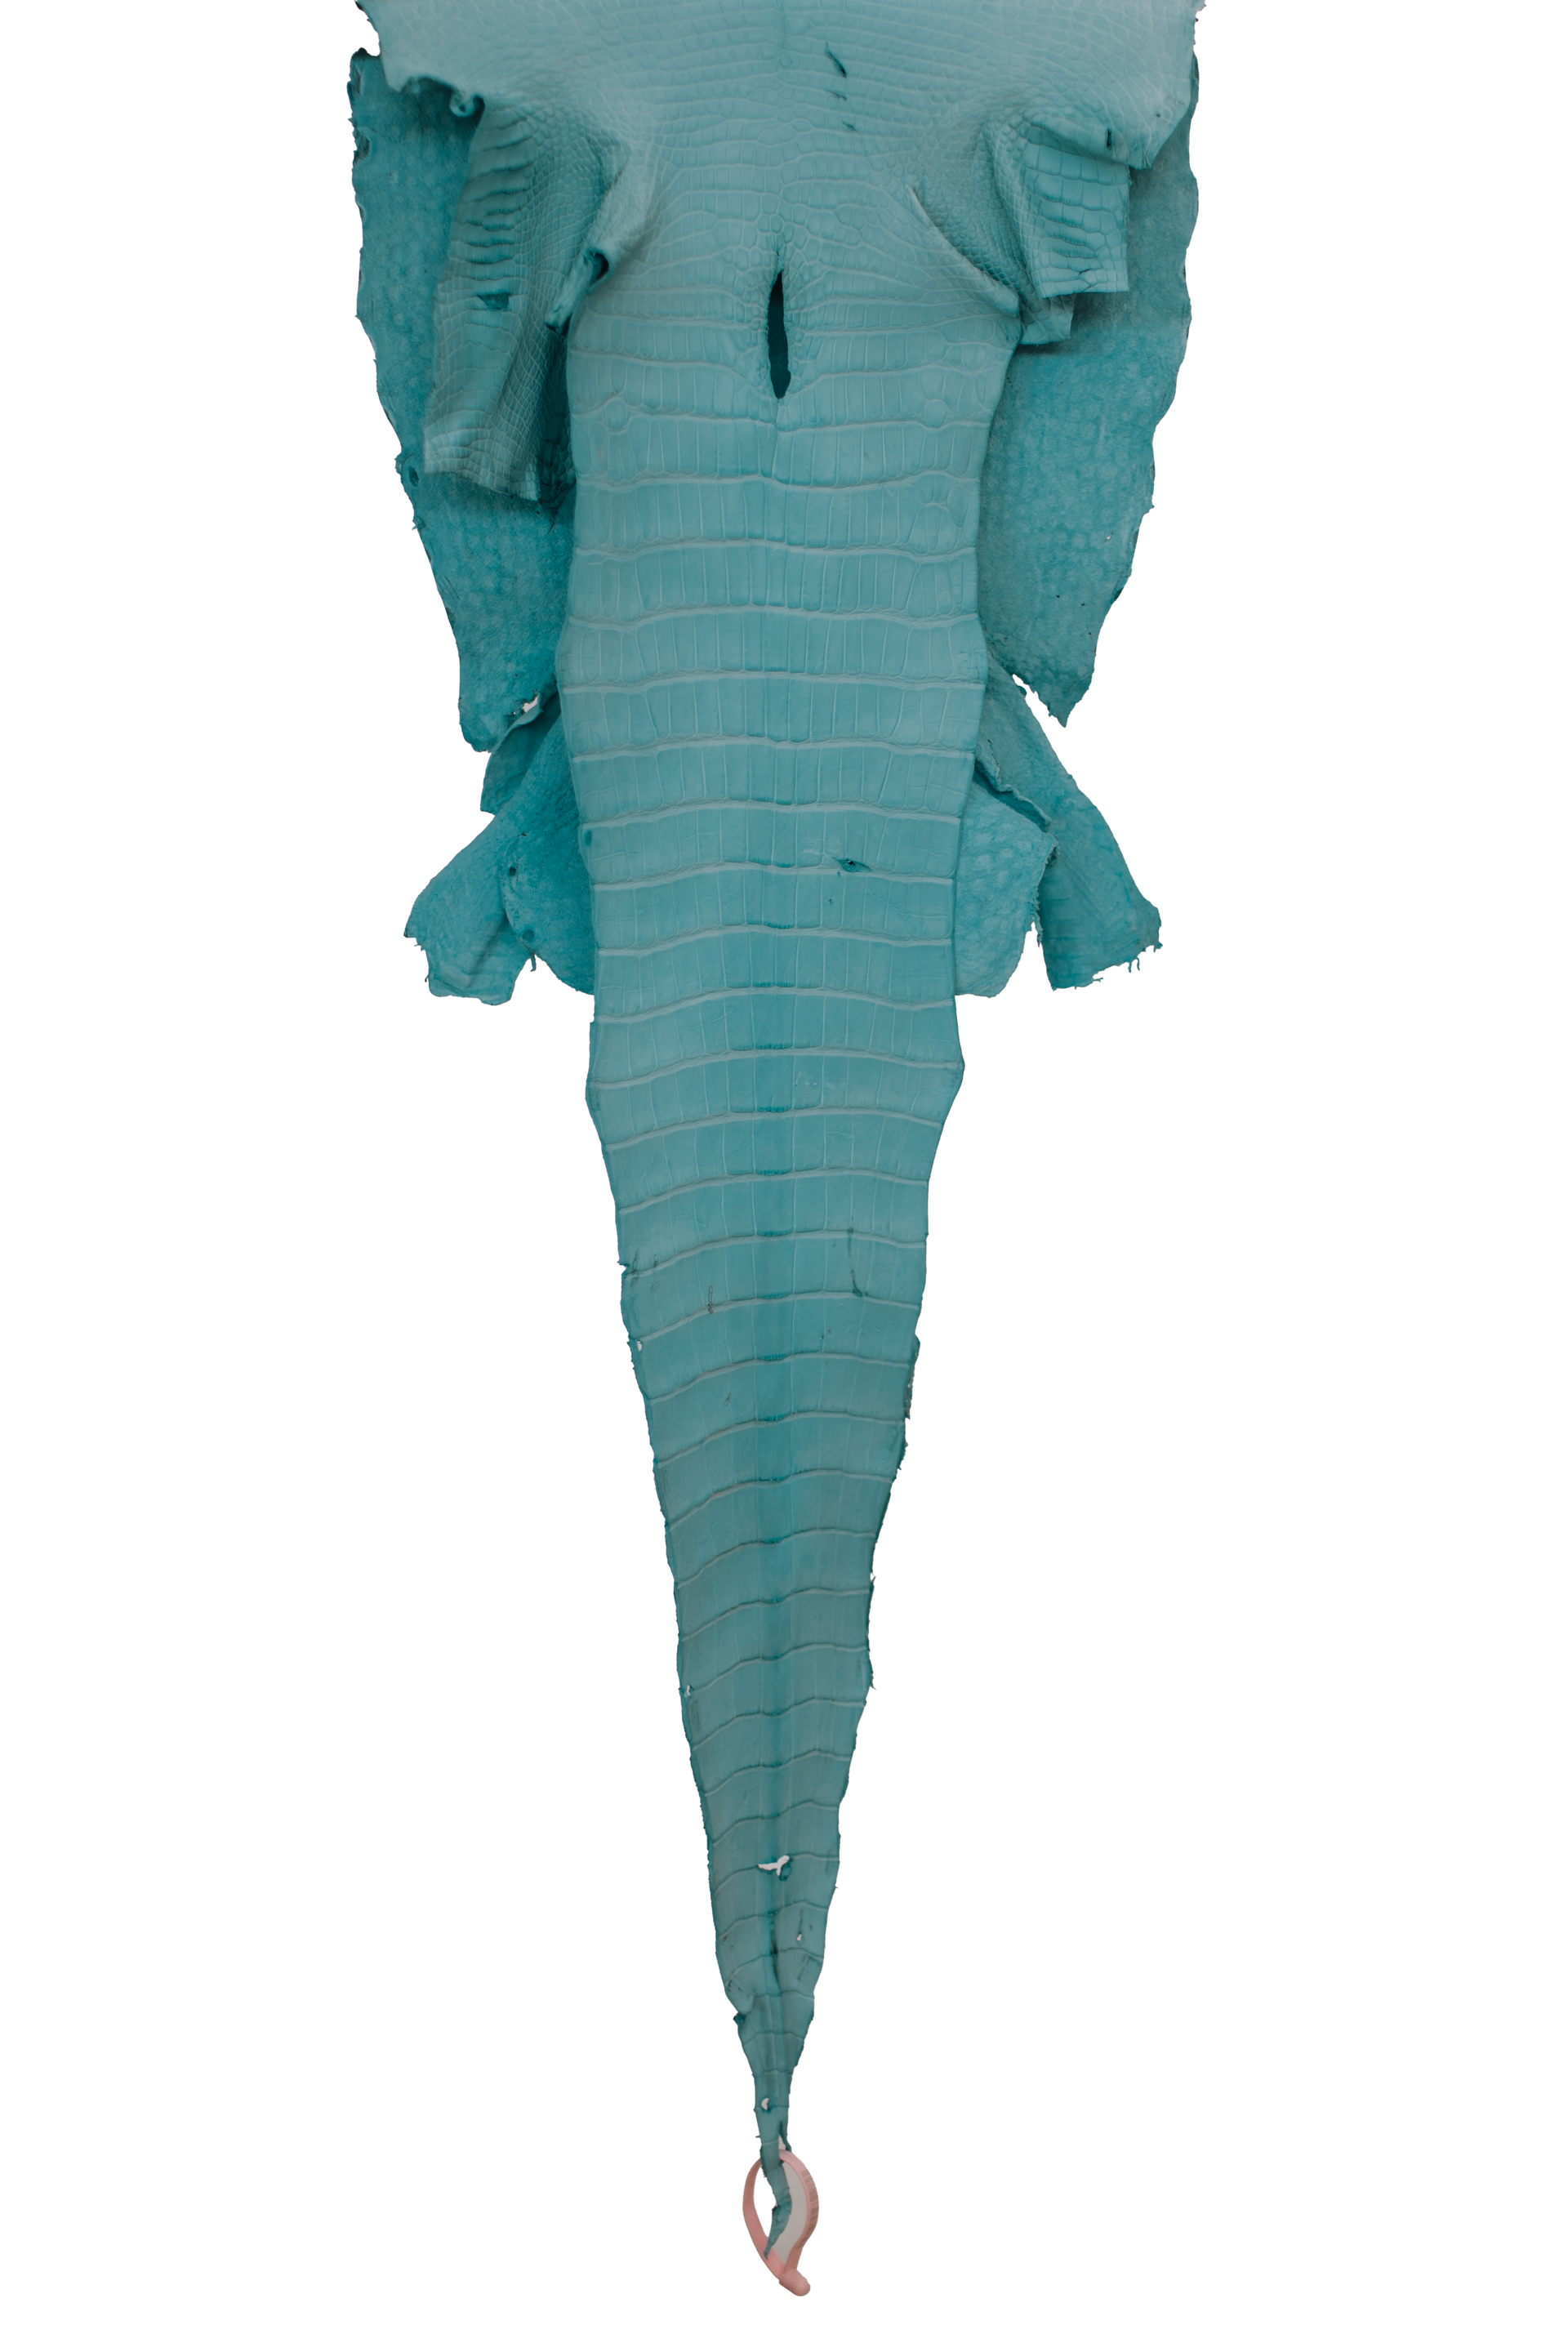 42 cm Grade 2/3 Aqua Matte Wild American Alligator Leather - Tag: LA18-0034827